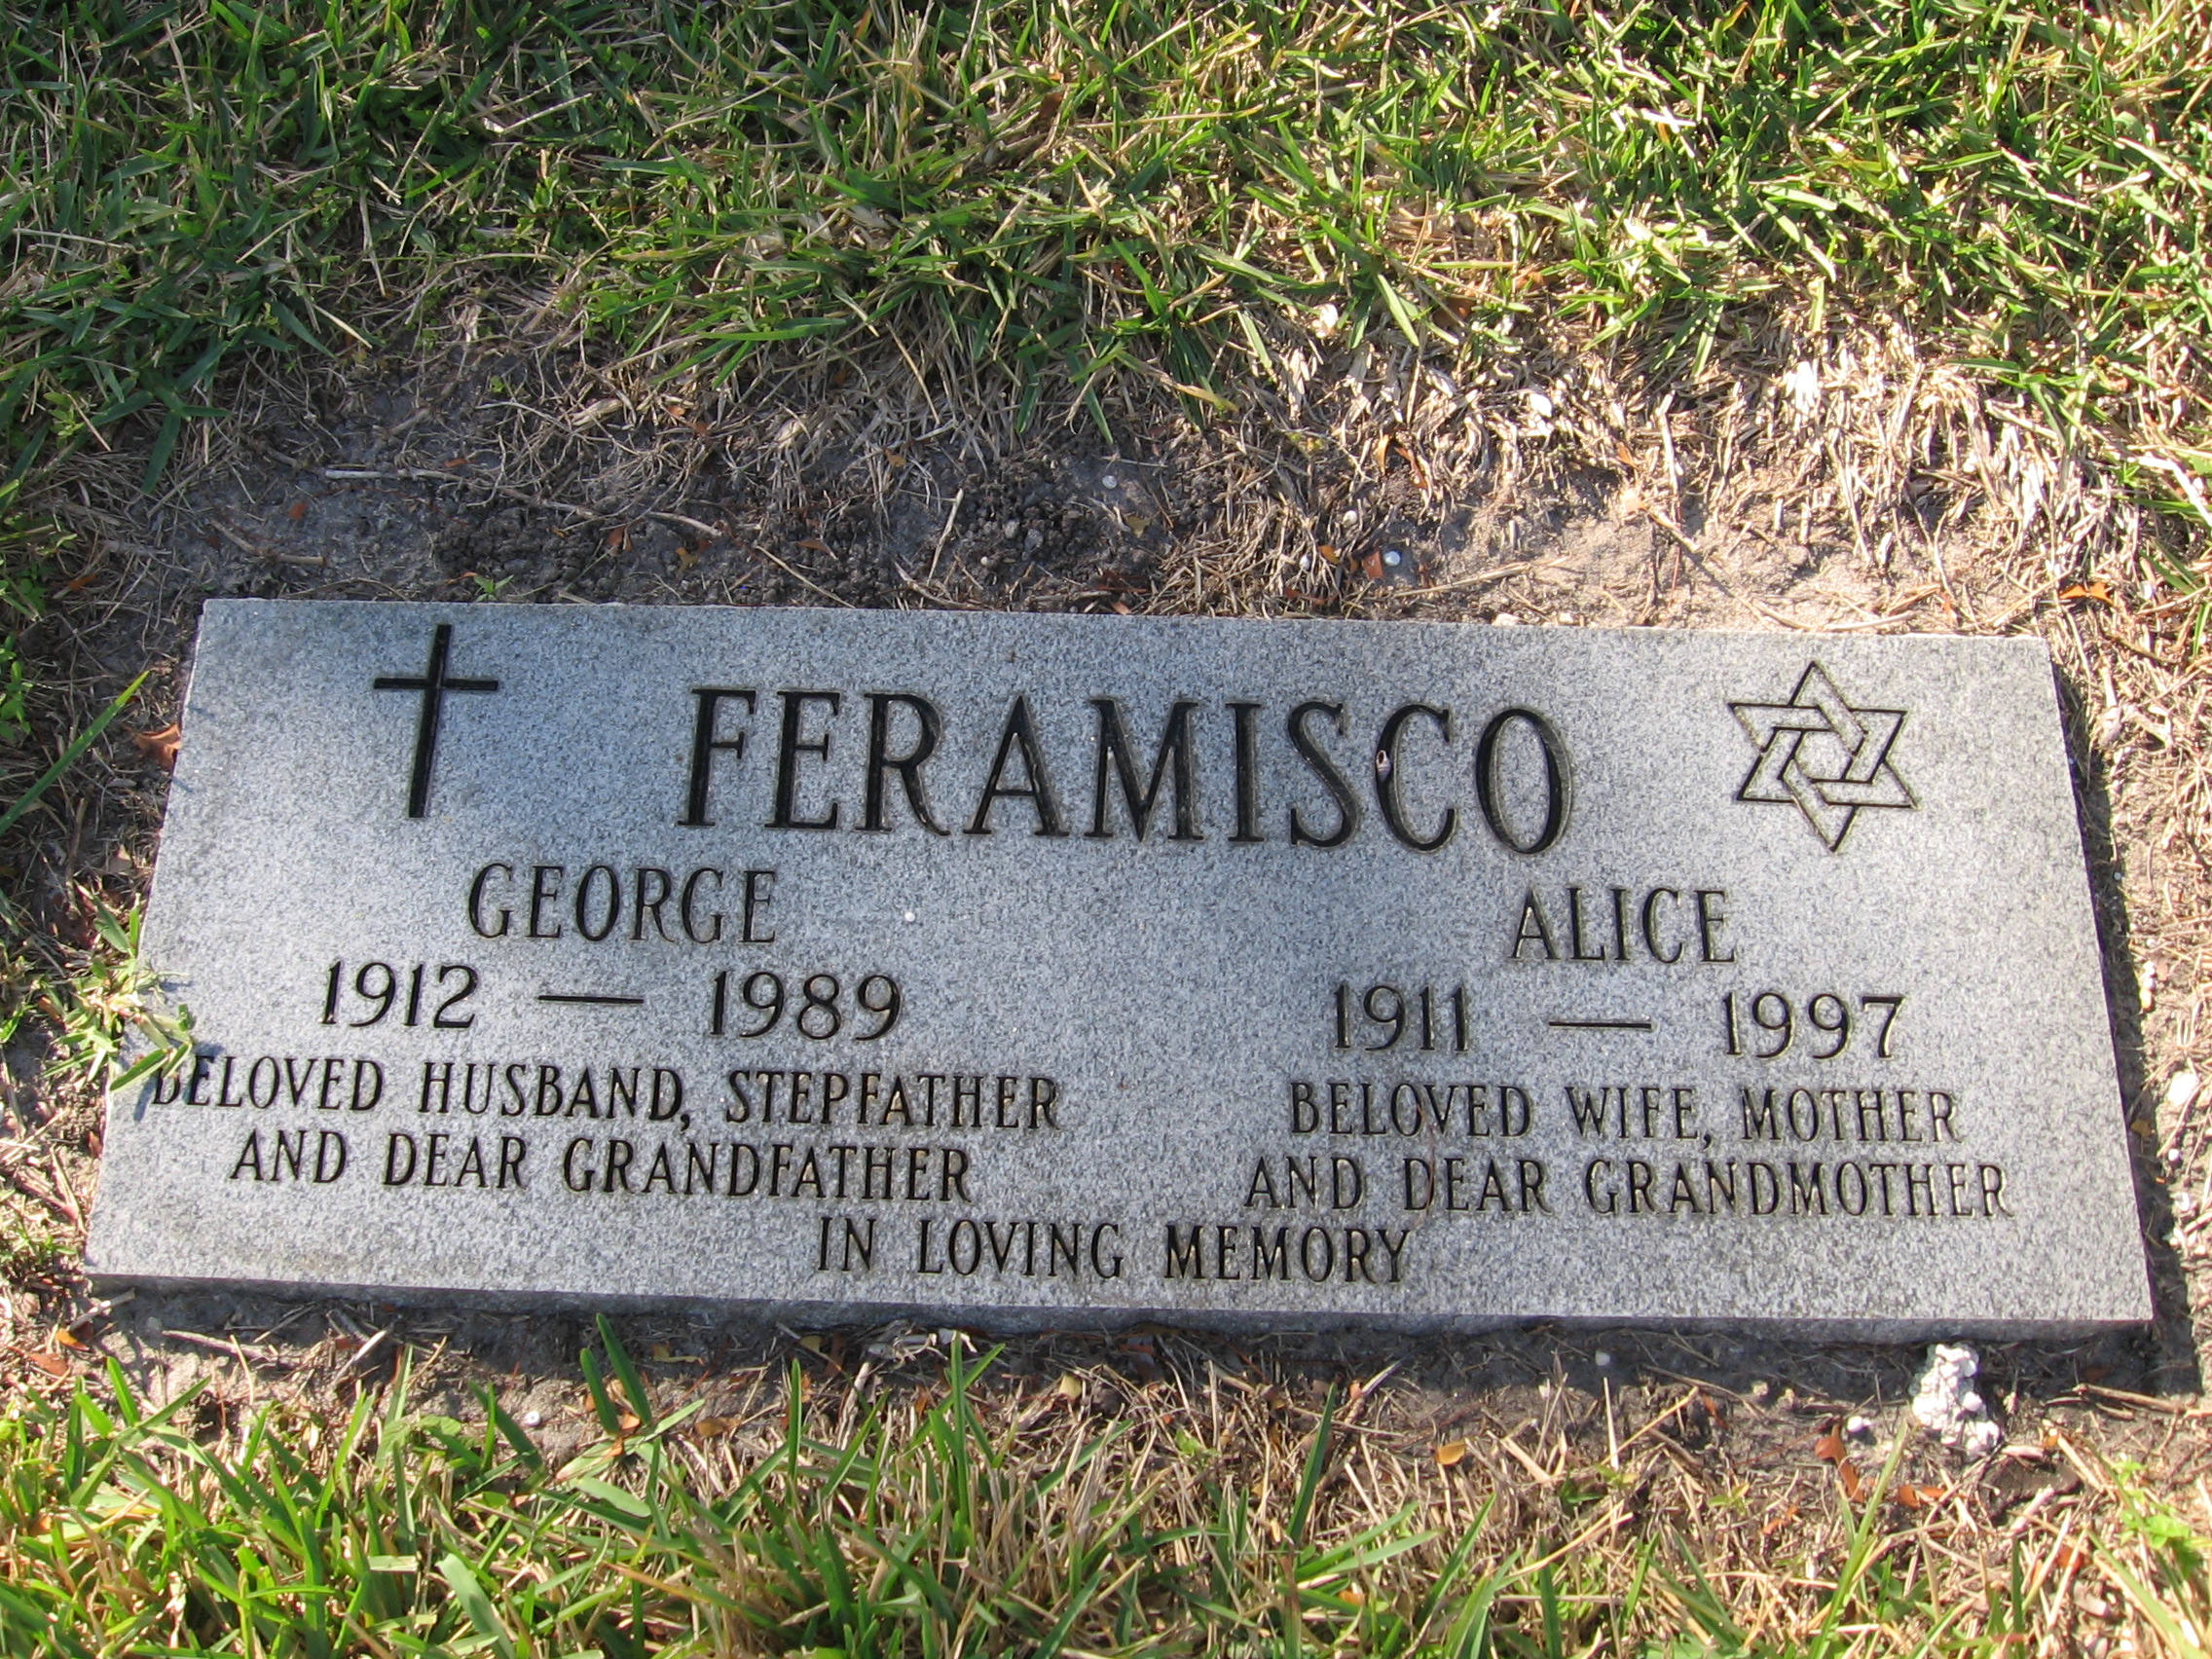 George Feramisco